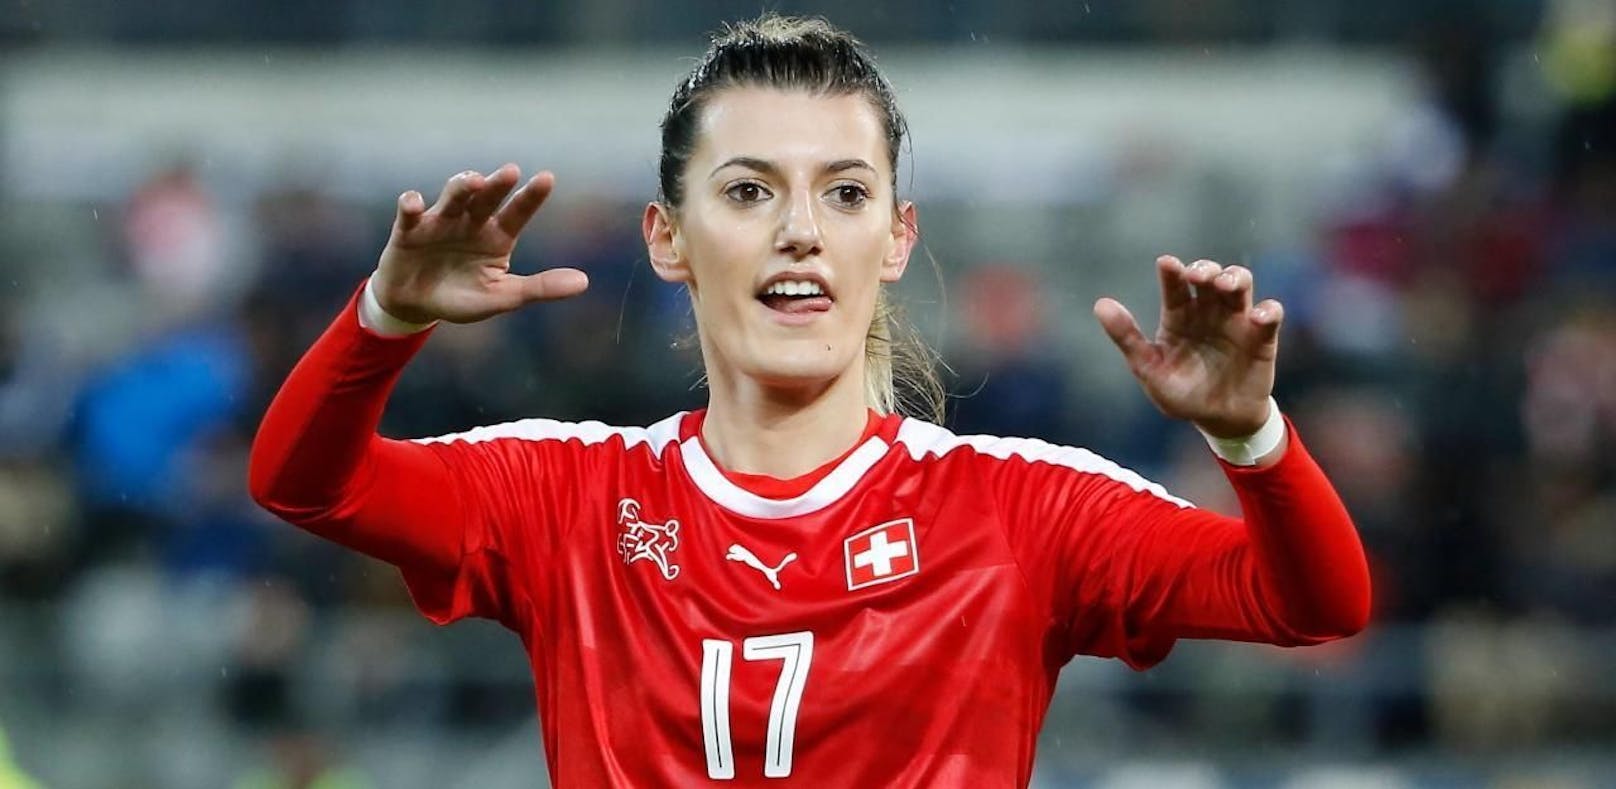 Nach einem Bad im Comer See wurde die Schweizer Nationalspielerin Florijana Ismaili am Samstag als vermisst gemeldet. 